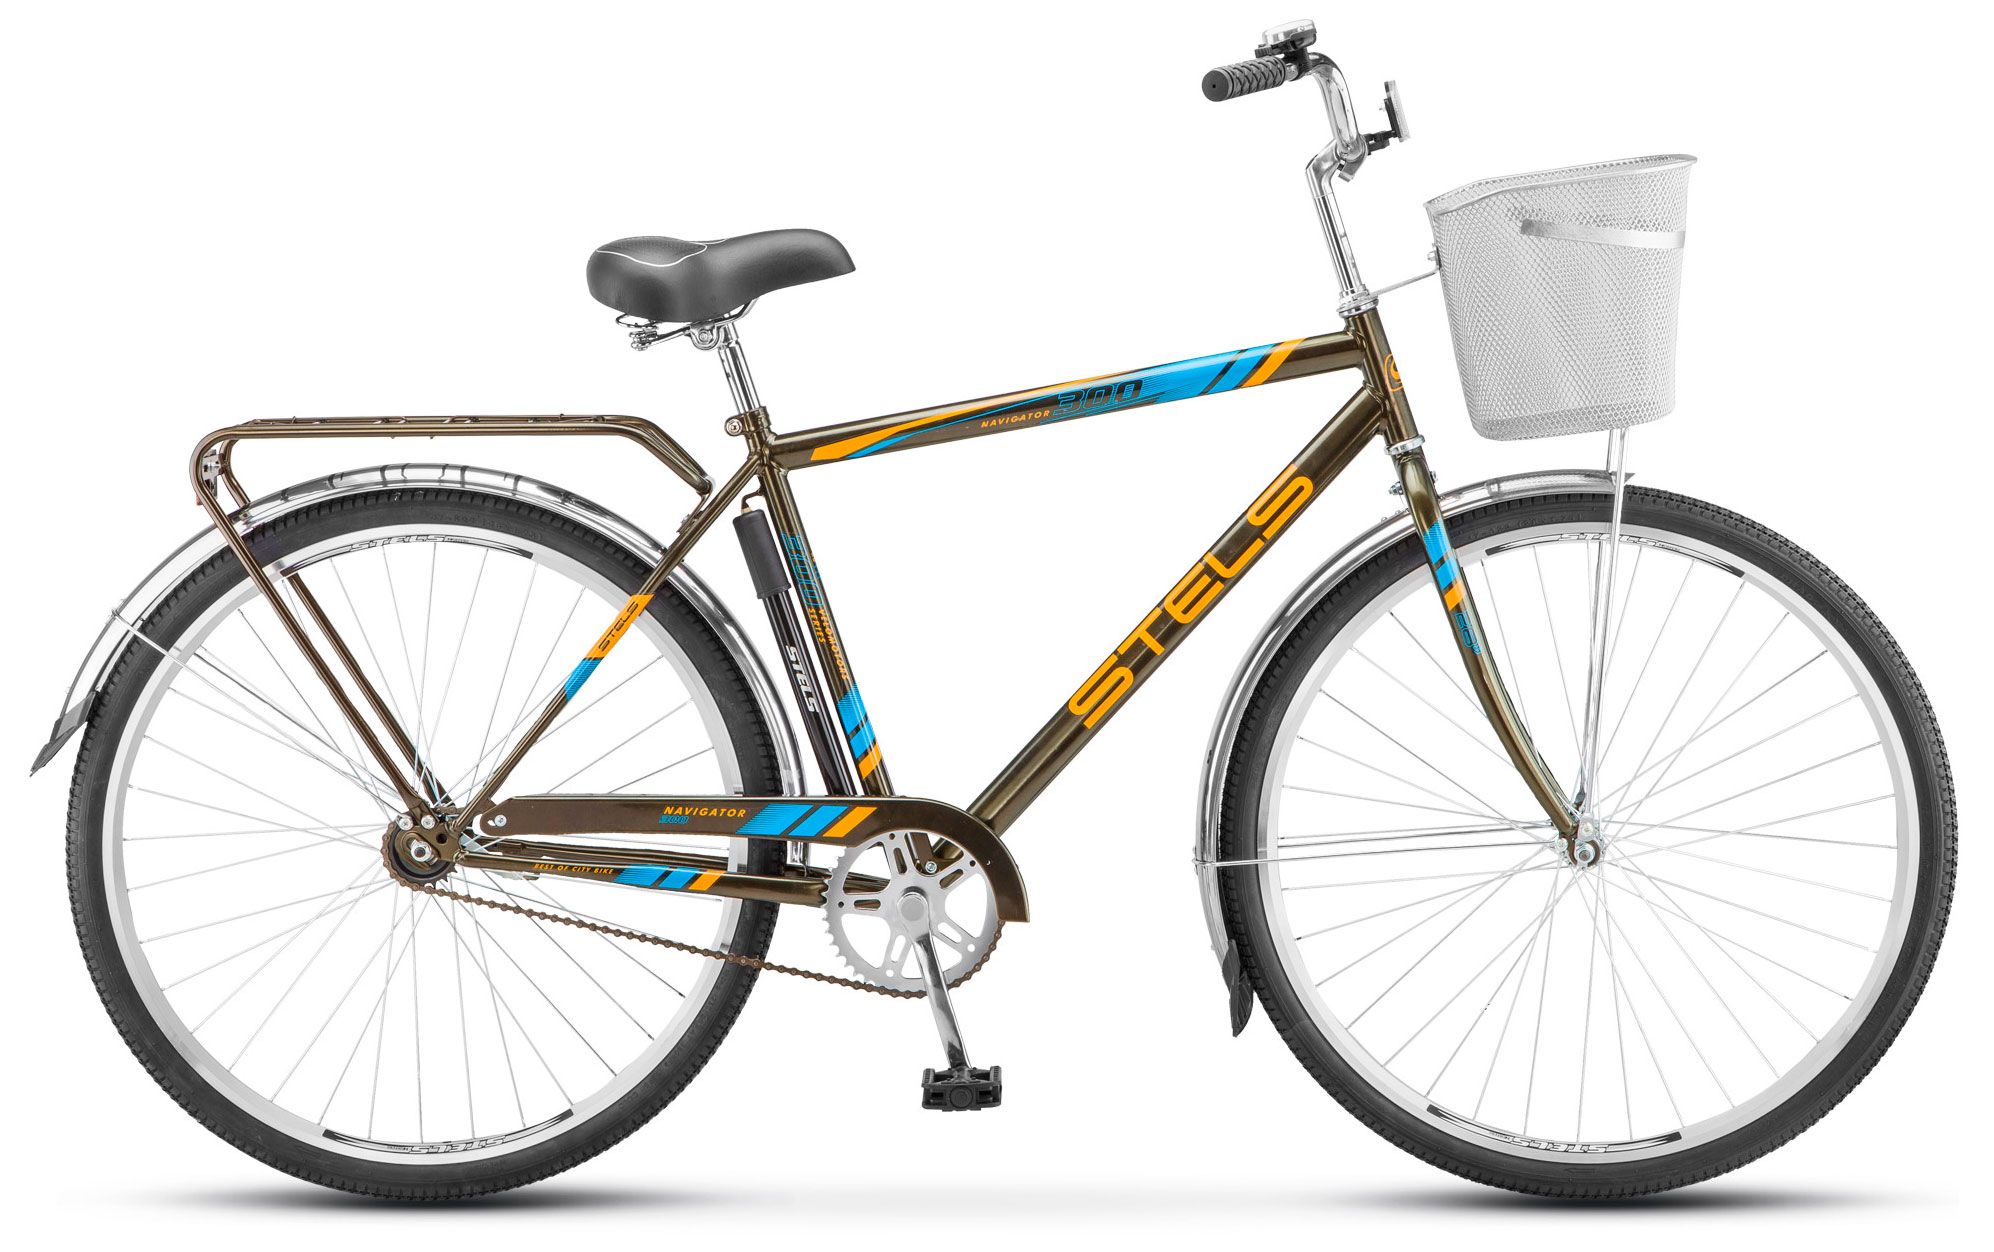  Отзывы о Городском велосипеде Stels Navigator 300 Gent 28 (Z010) 2018